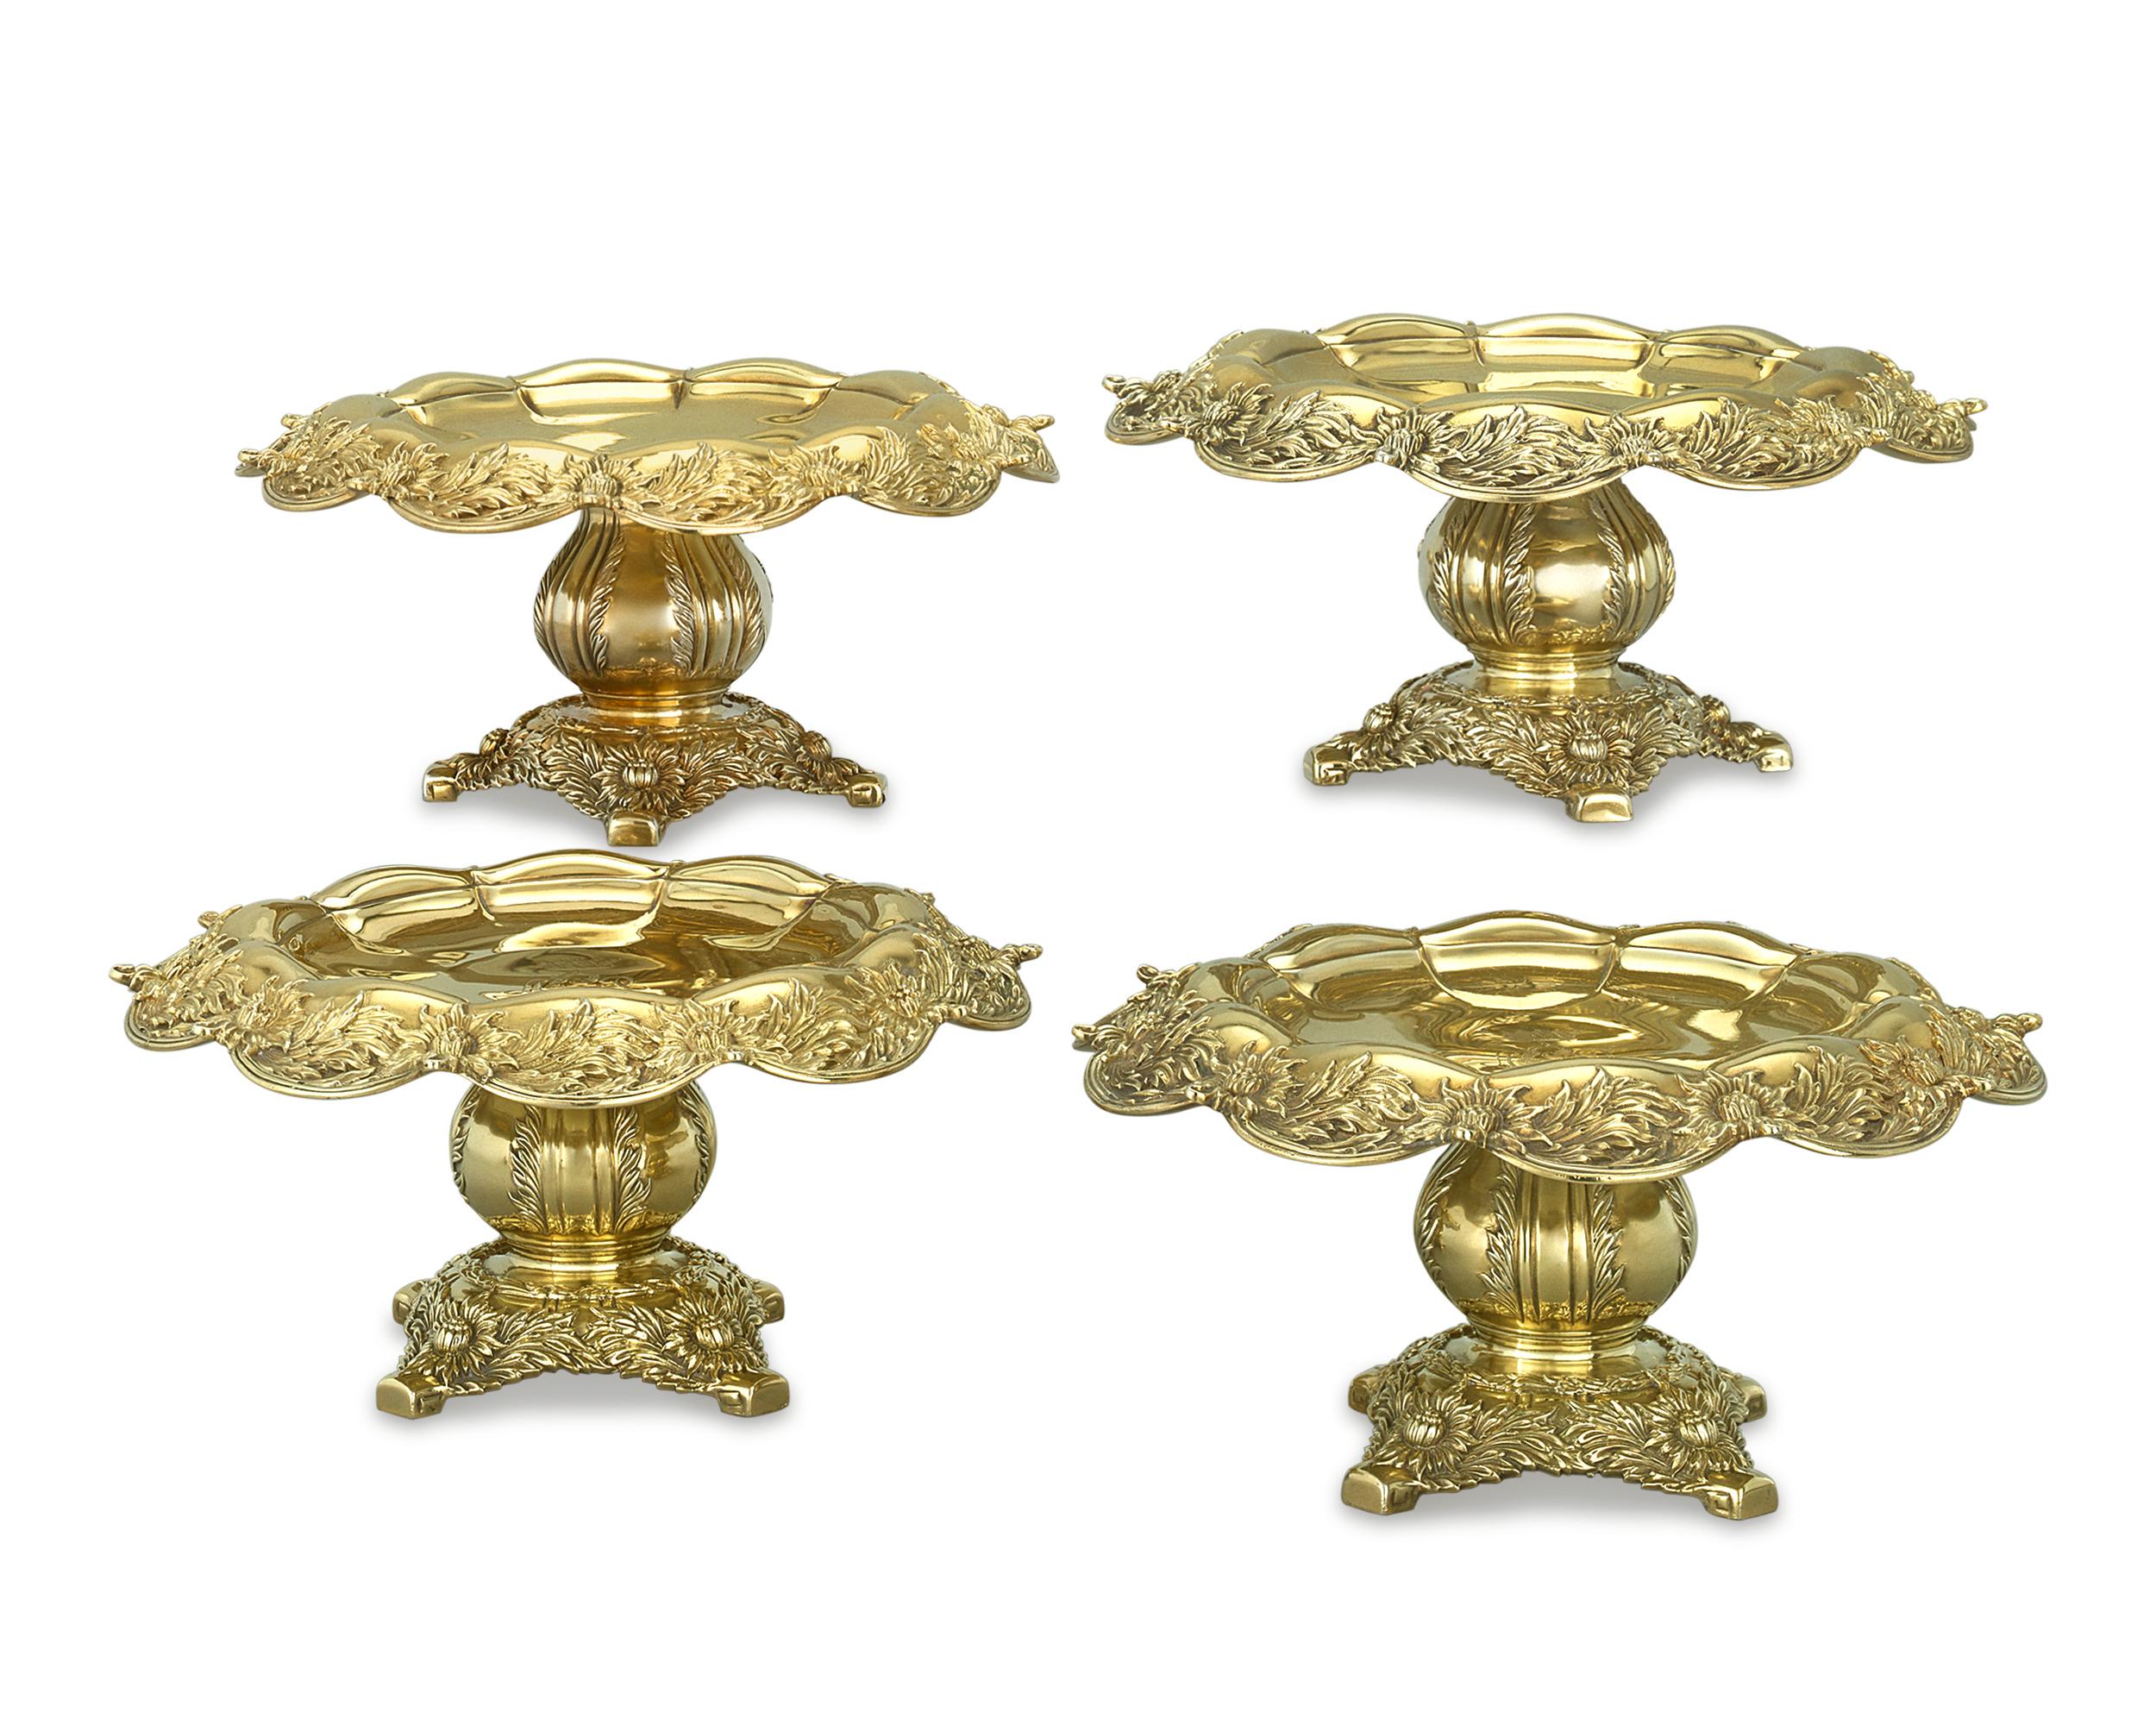 Cet impressionnant ensemble de quatre tazze en argent doré de Tiffany & Co. présente le motif très populaire et distinctif du chrysanthème. La brillance de la fabrication est ce qui distingue vraiment ce motif intemporel, qui est toujours considéré